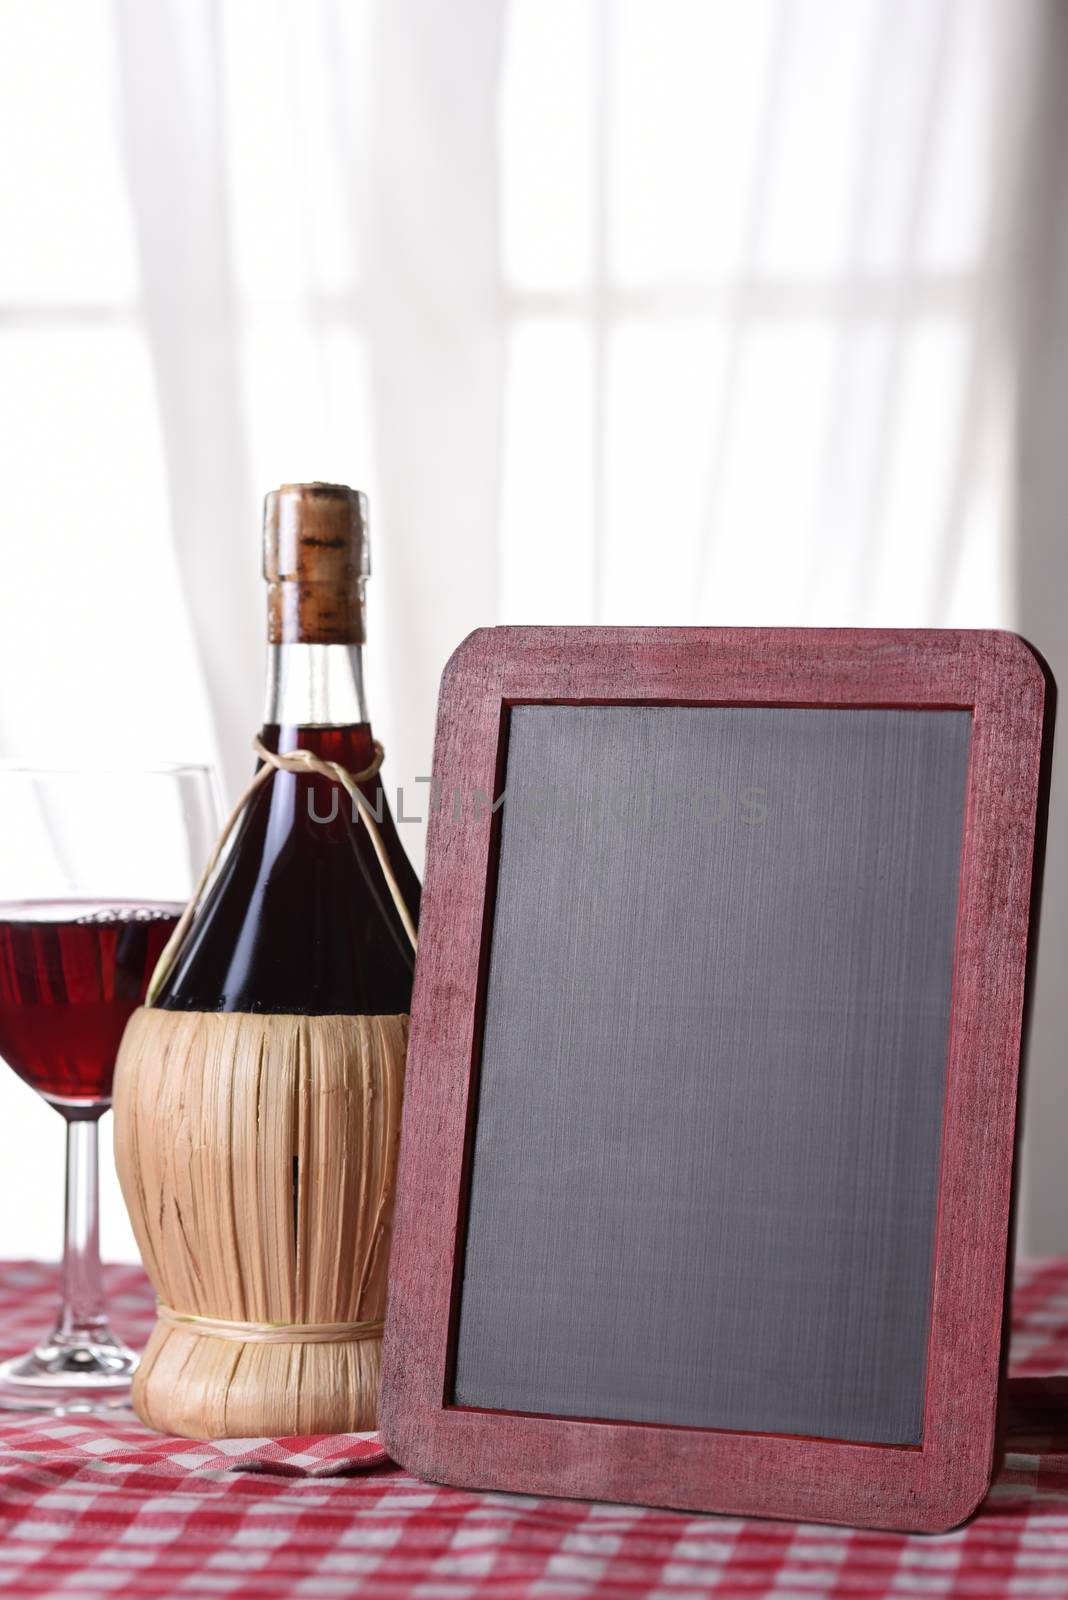 A basket bottle of Chianti wine by sCukrov